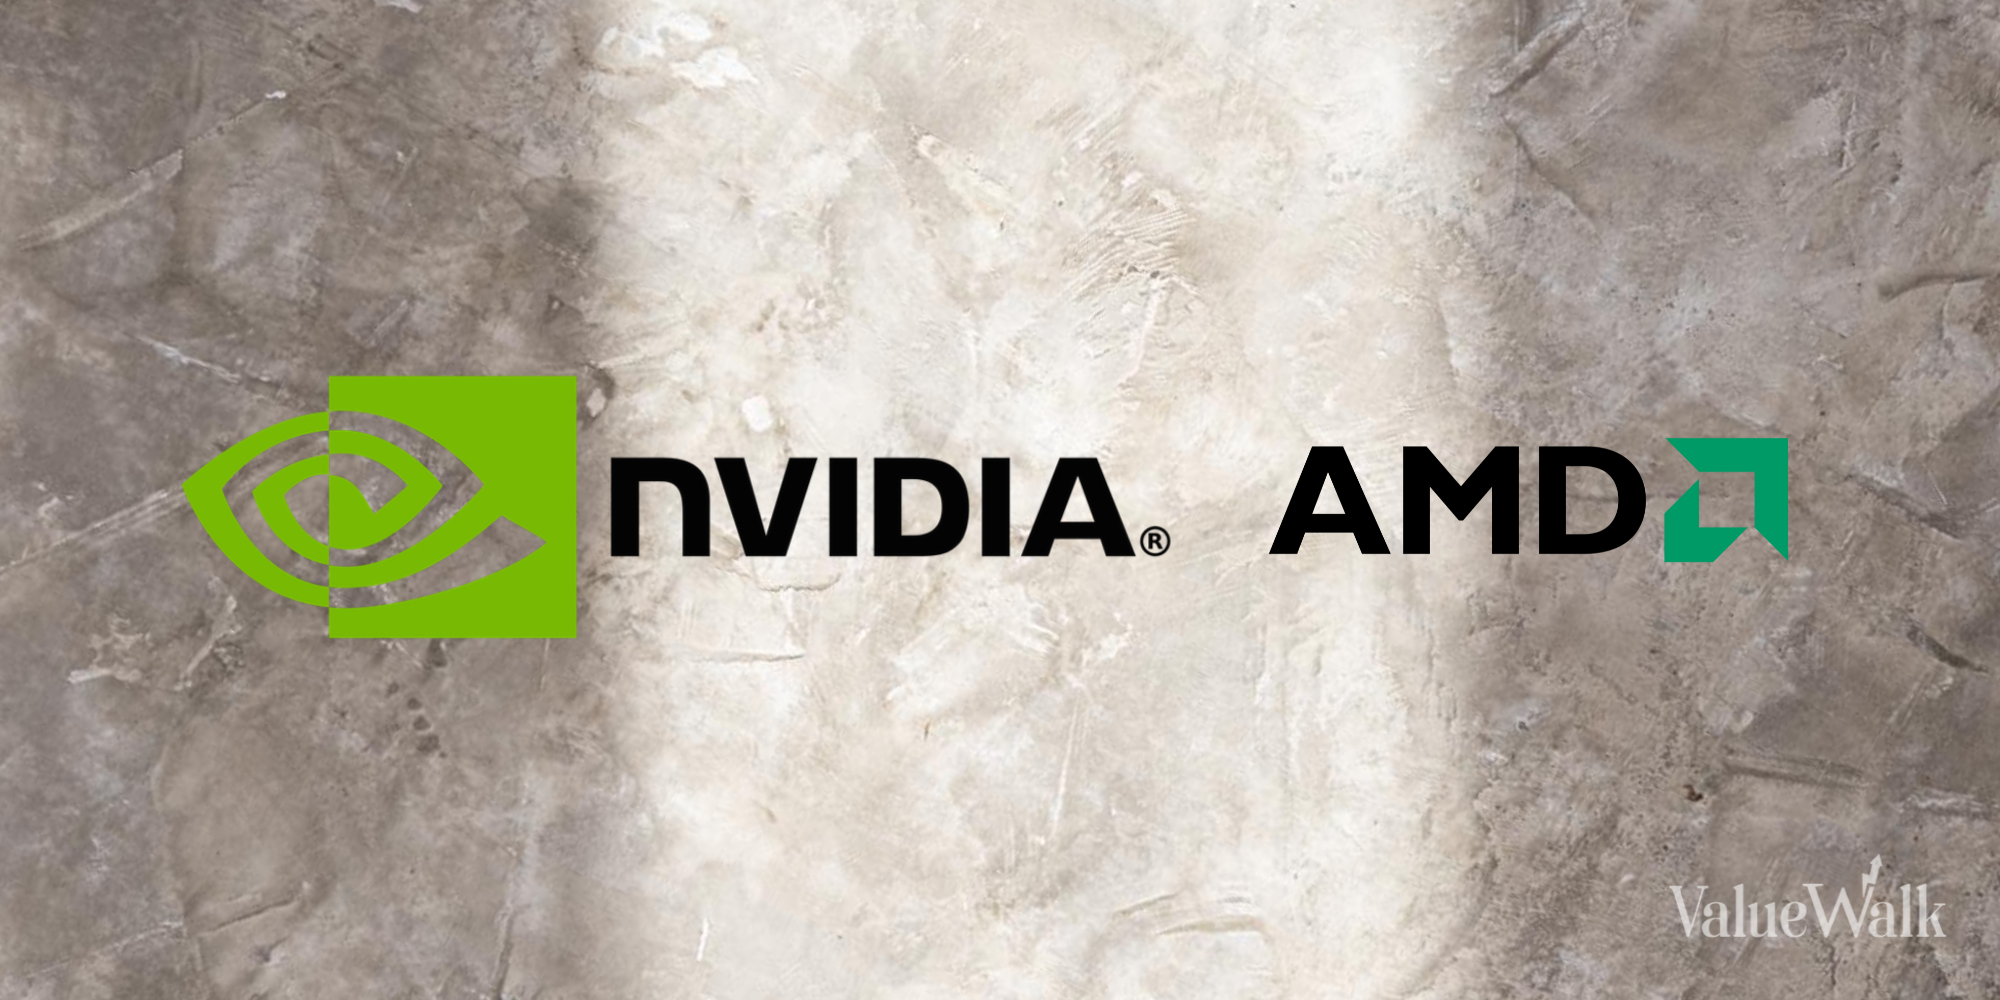 NVIDIA and AMD